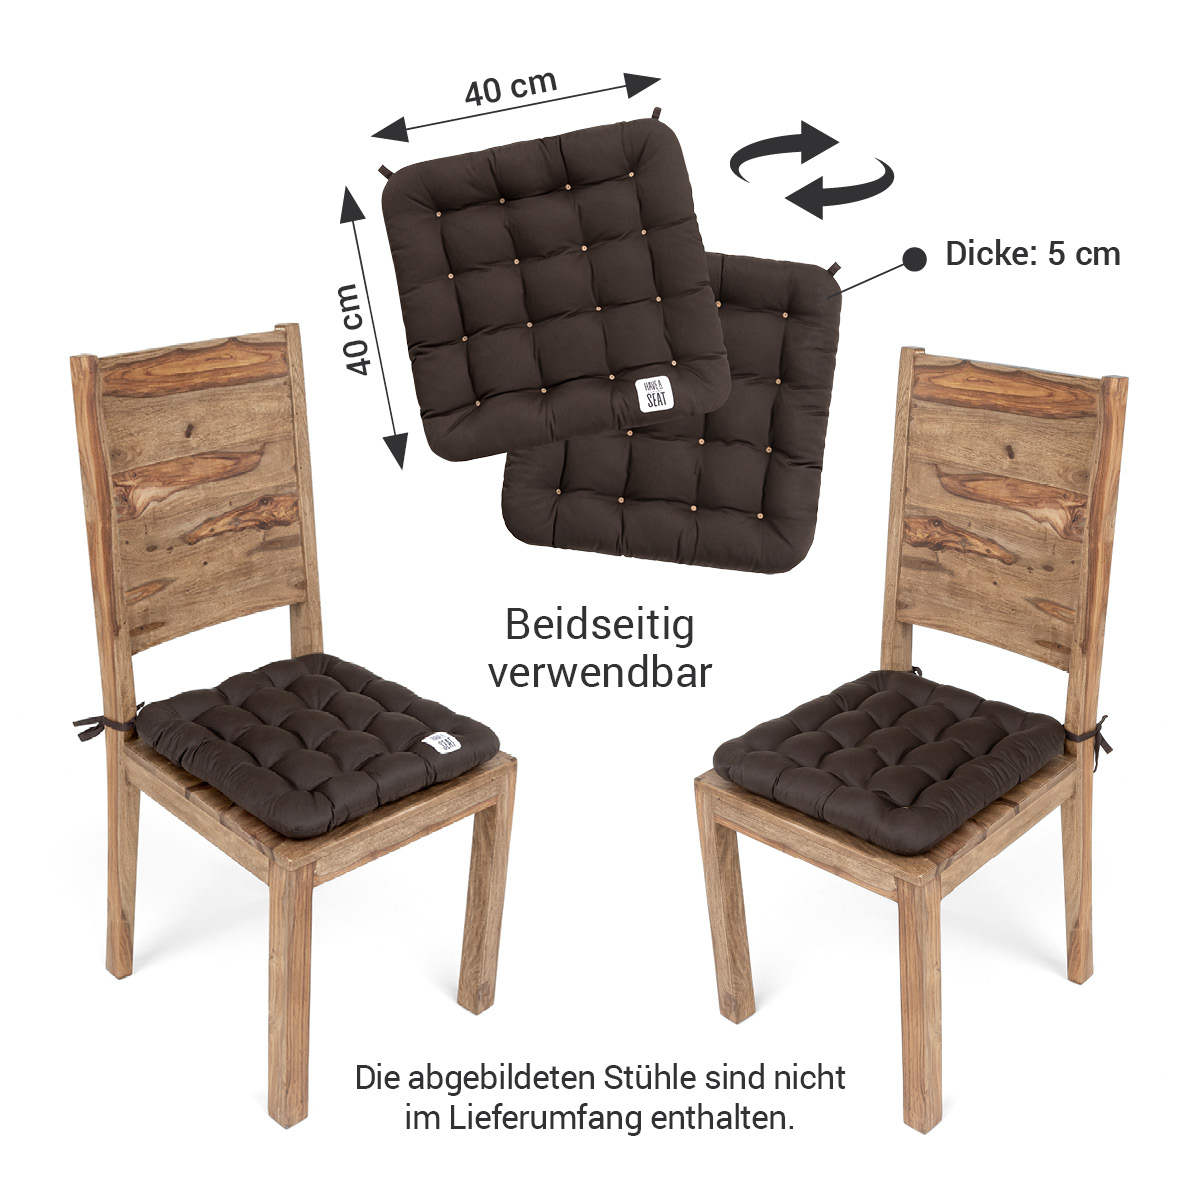 Premium Stuhlkissen 40x40 zum Binden in braun / dunkelbraun, das Stuhlsitzkissen kann auf beiden Seiten verwendet werden | HAVE A SEAT Living